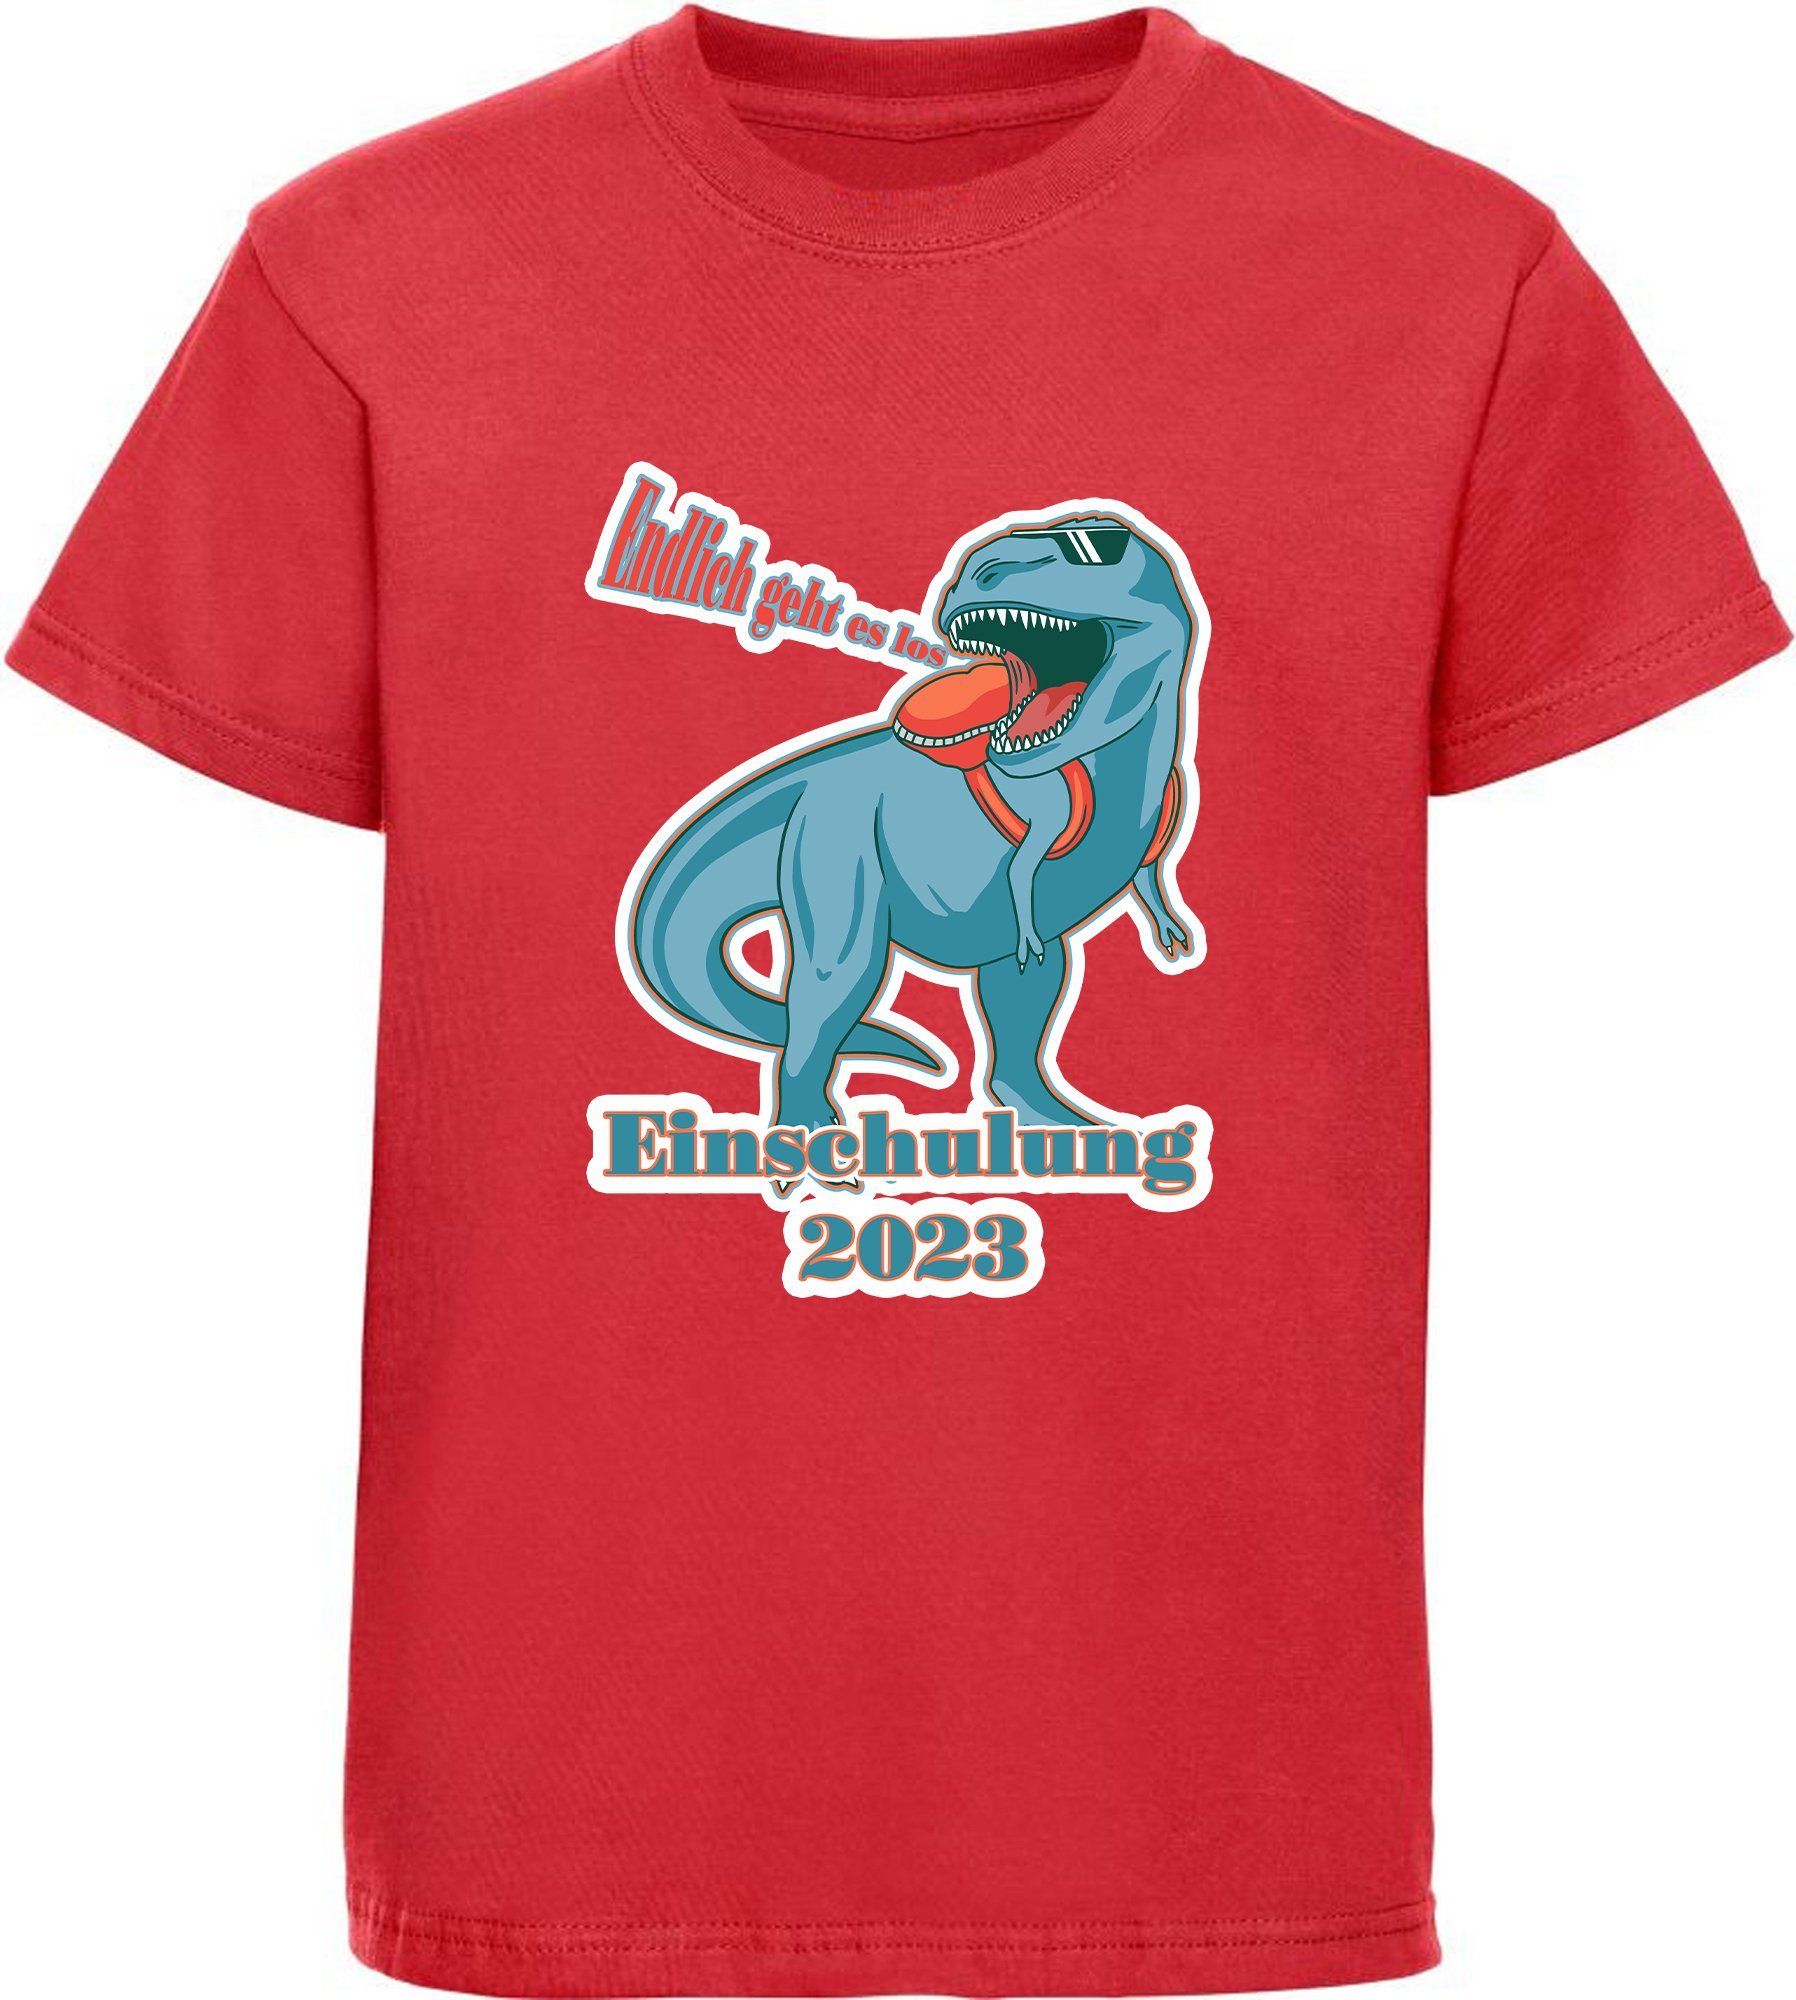 T-Shirt Endlich schwarz, weiß, Aufdruck, rot, es Kinder i37 MyDesign24 blau, Baumwollshirt 2023 T-Rex bedrucktes Einschulung los geht Print-Shirt -